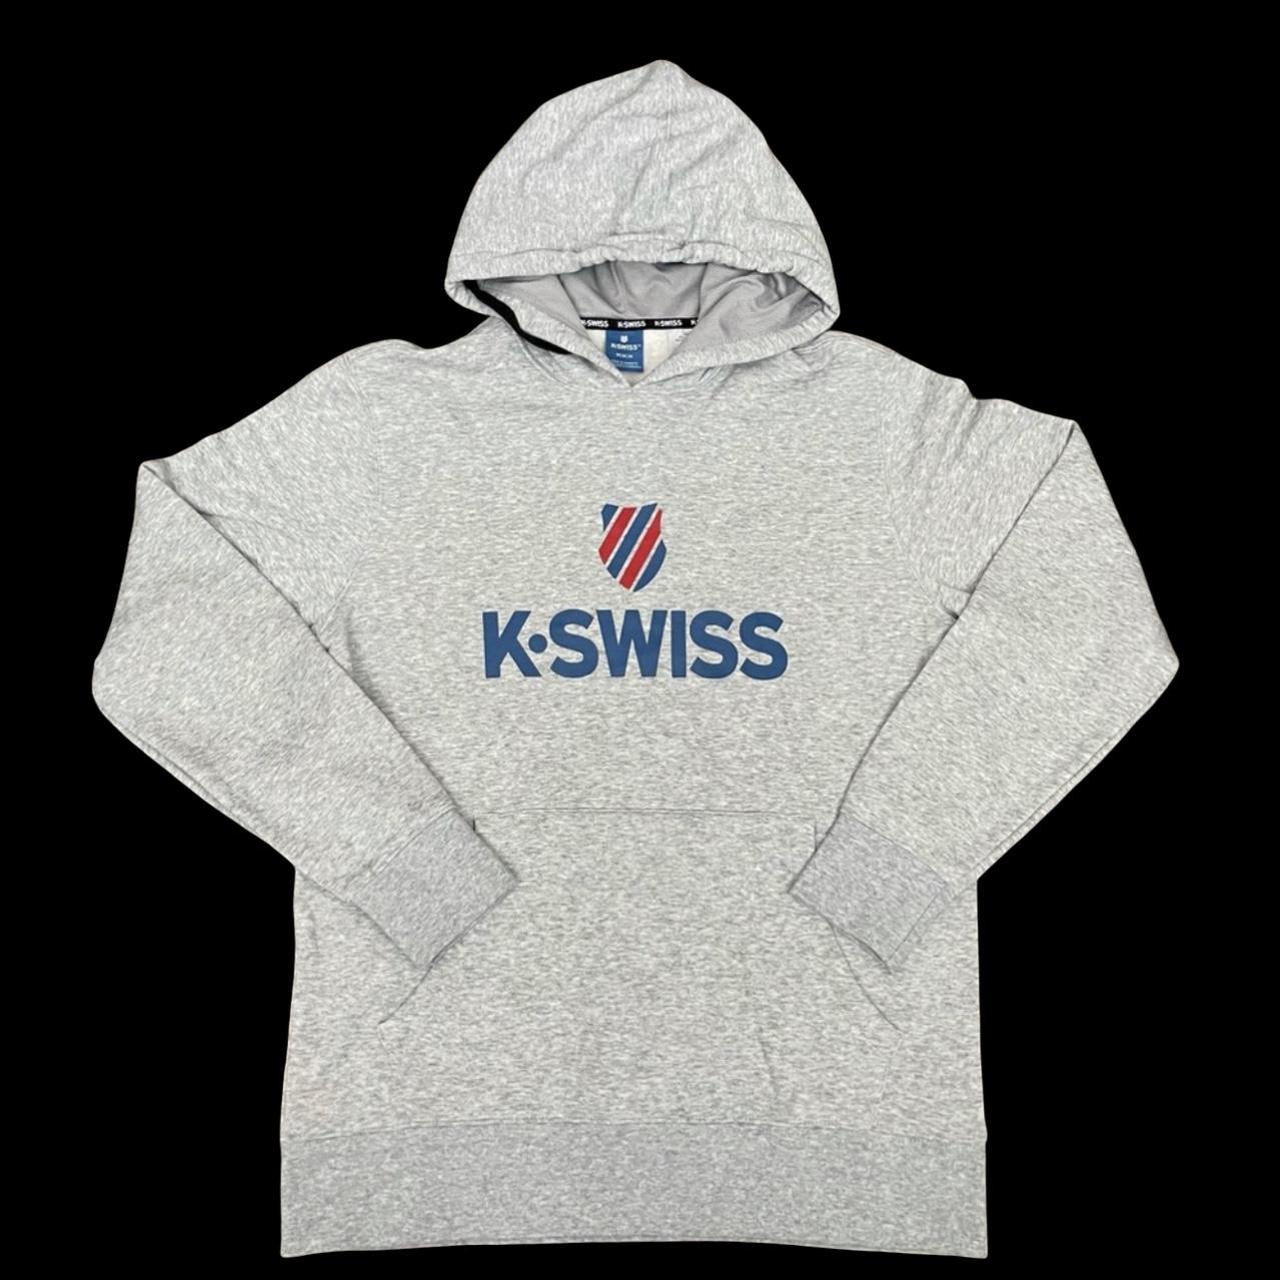 Product Image 1 - Gently used KSwiss 2000 Sweatshirt